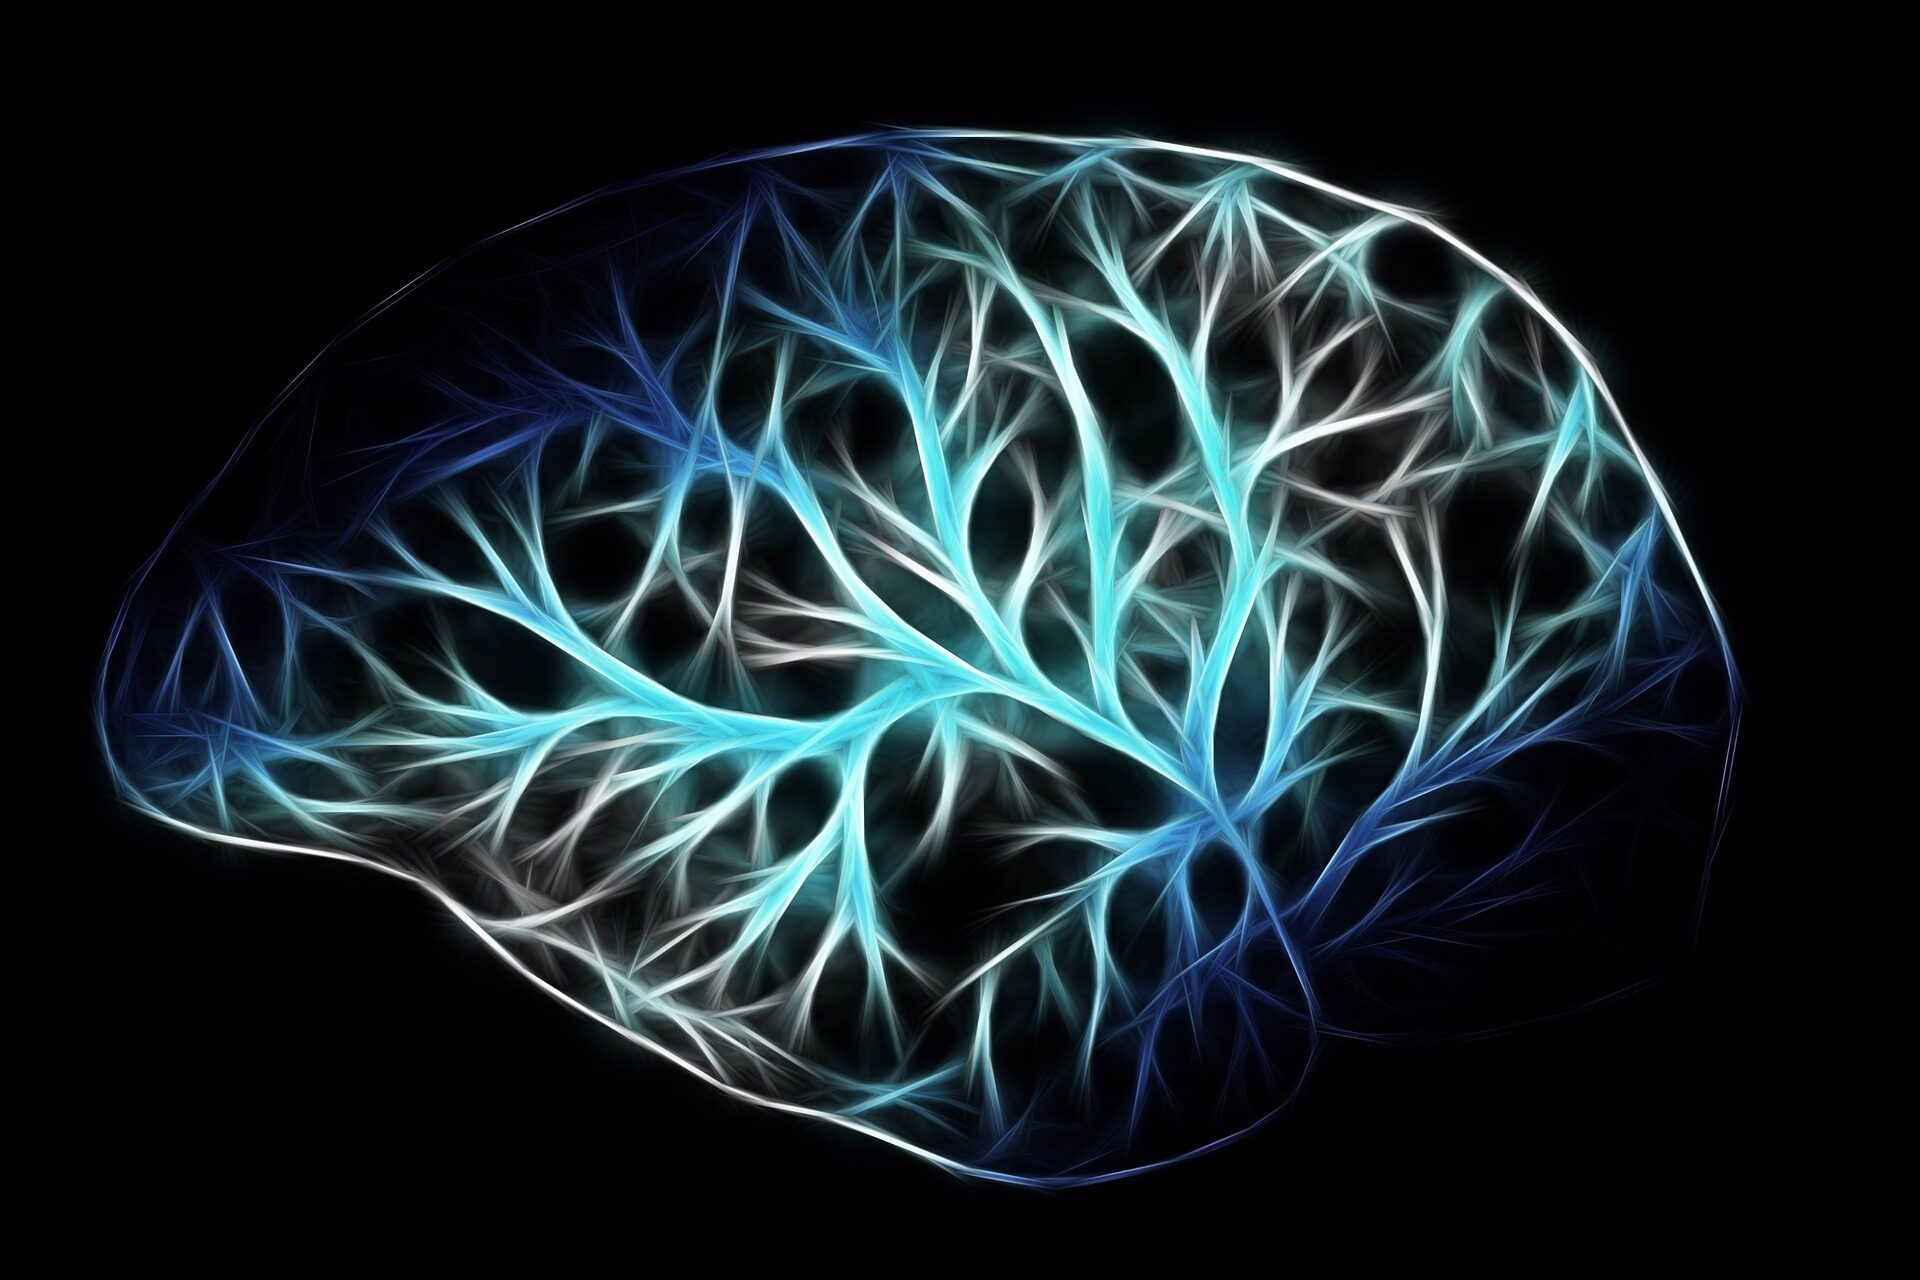 Abbildung eines Gehirns